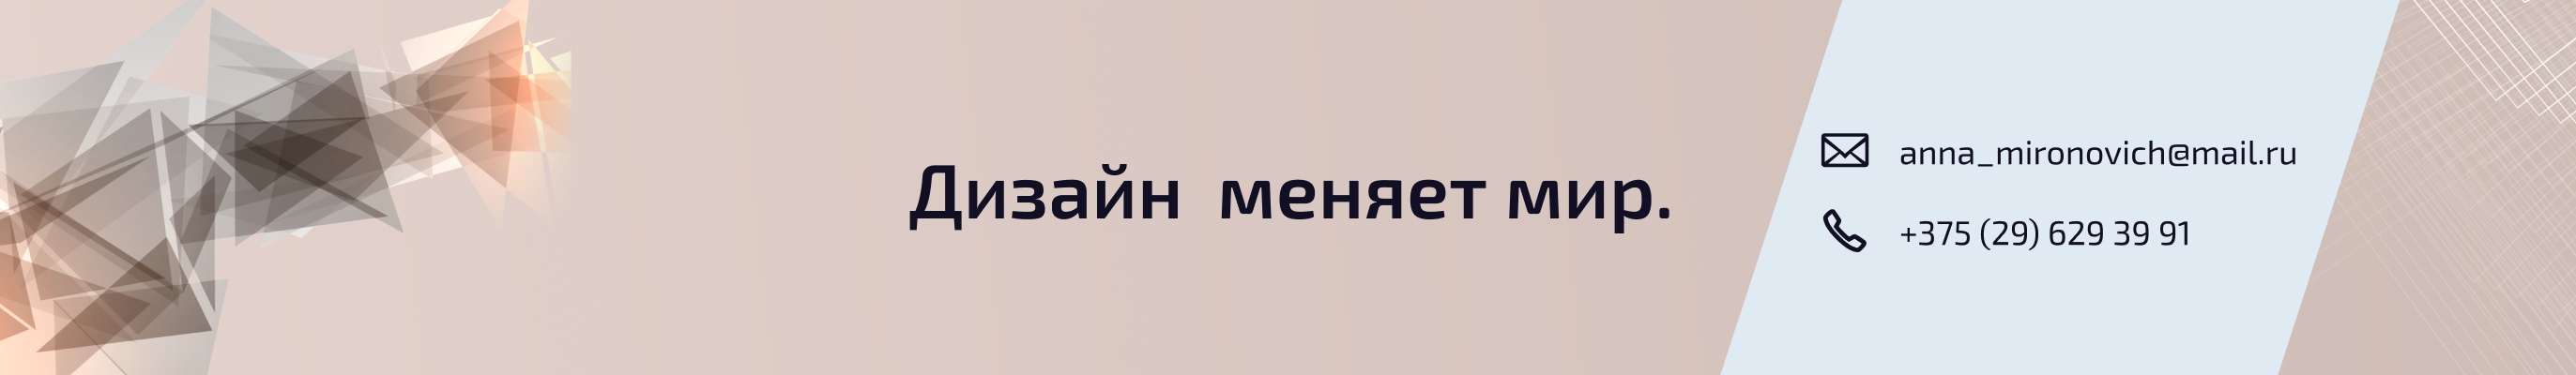 Anna Mironovich's profile banner